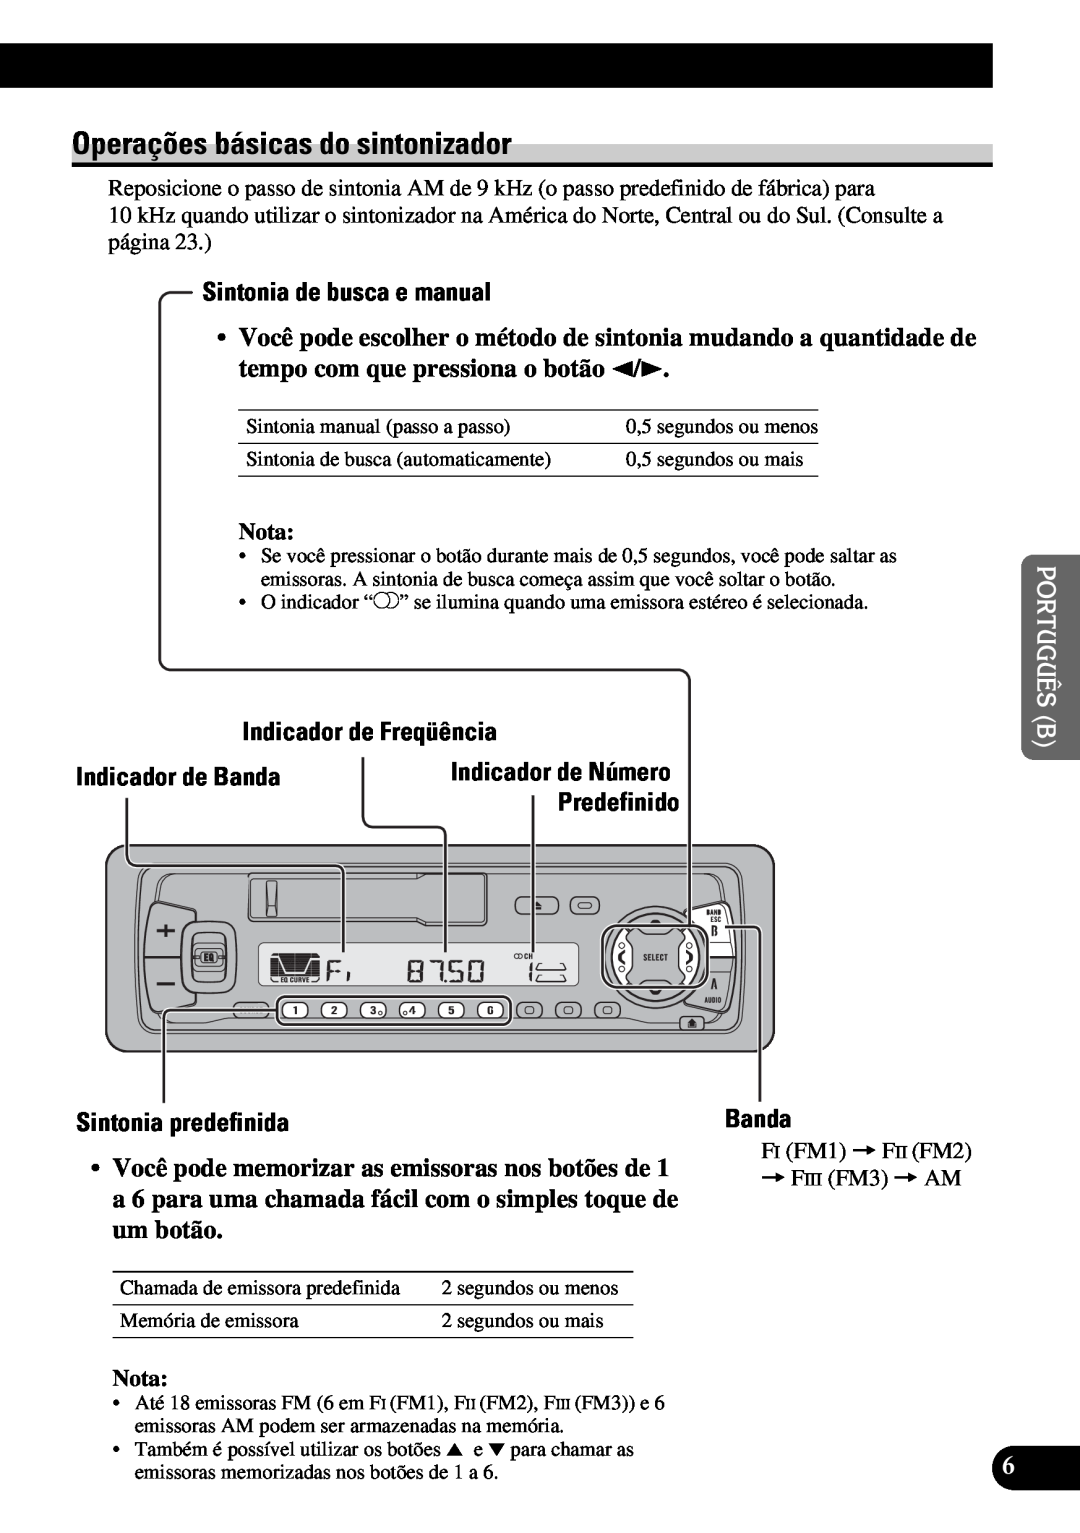 Pioneer KEH-P4950 Operações básicas do sintonizador, Sintonia de busca e manual, Indicador de Freqüência, Banda 